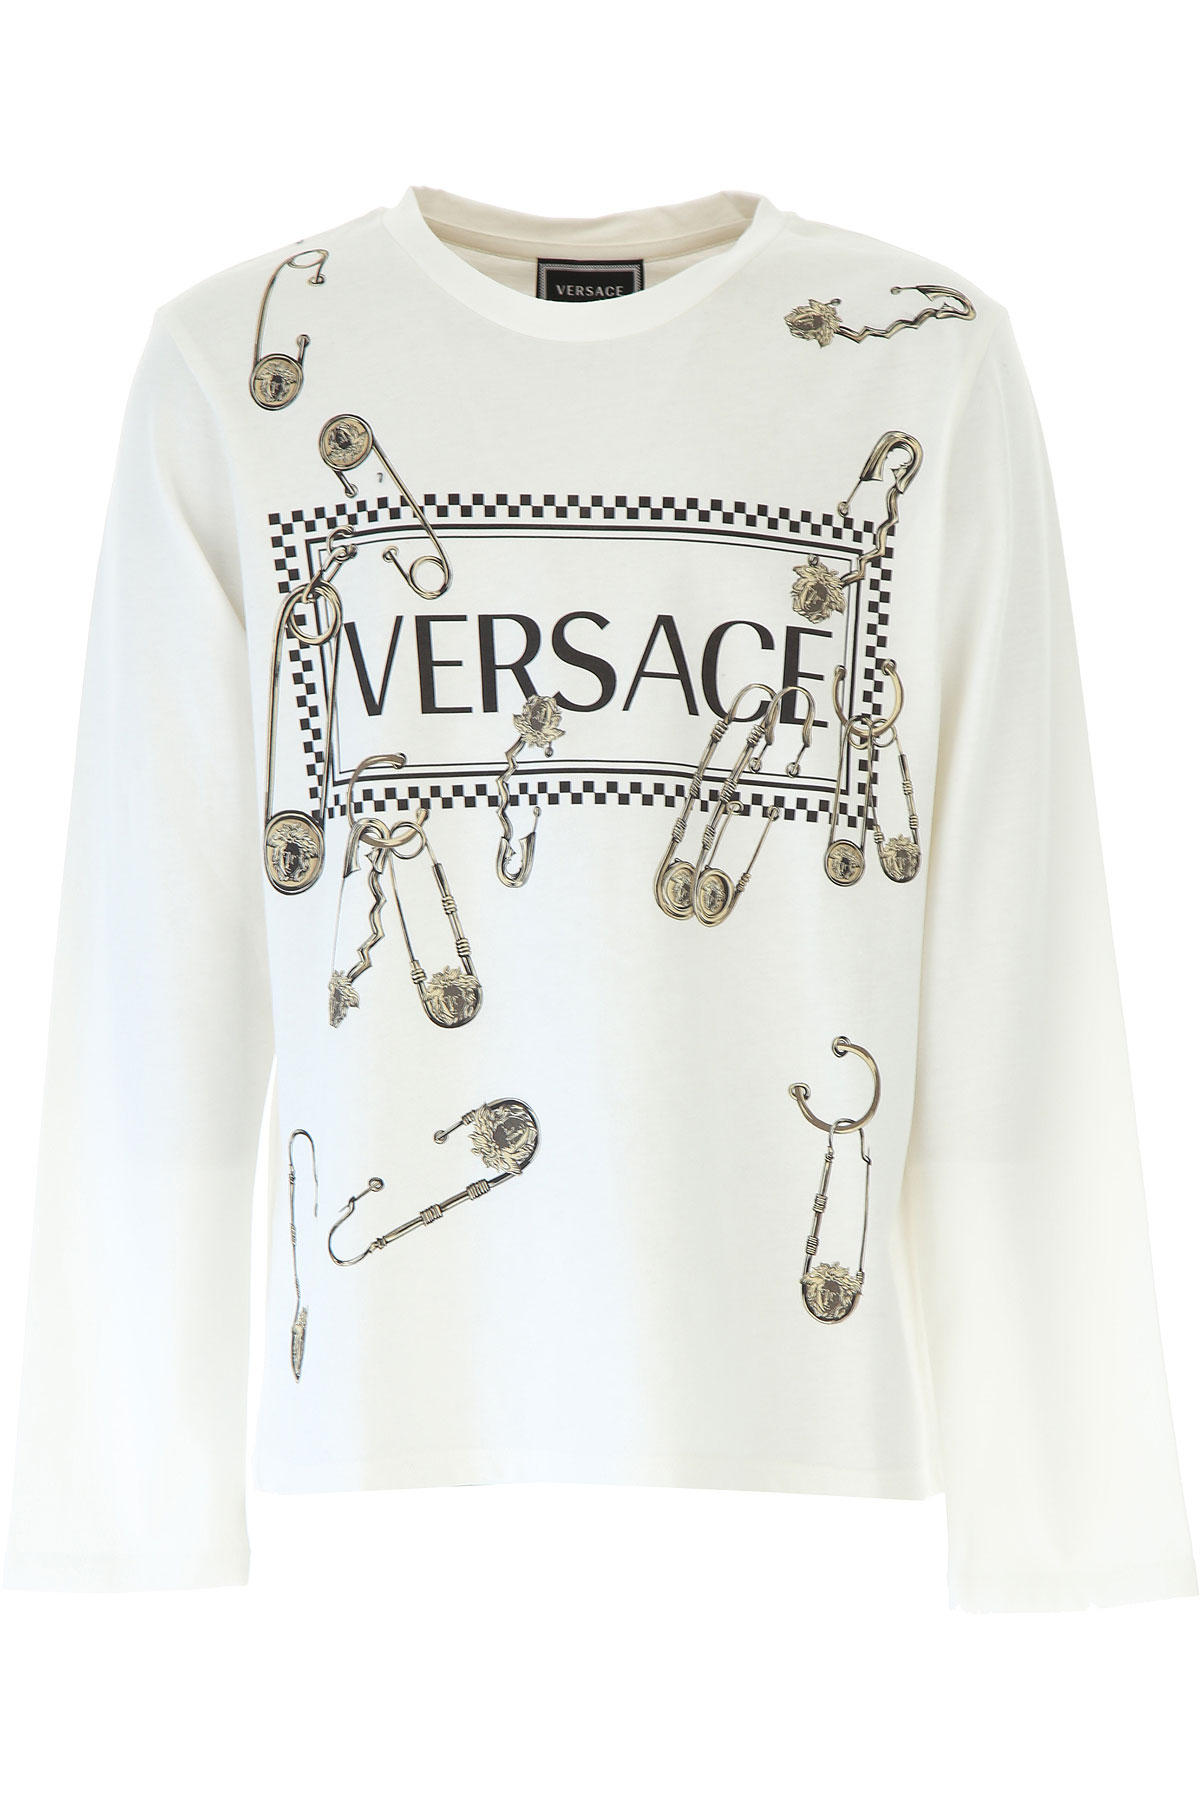 Versace Kinder T-Shirt für Jungen Günstig im Sale, Weiss, Baumwolle, 2017, 10Y 12Y 8Y